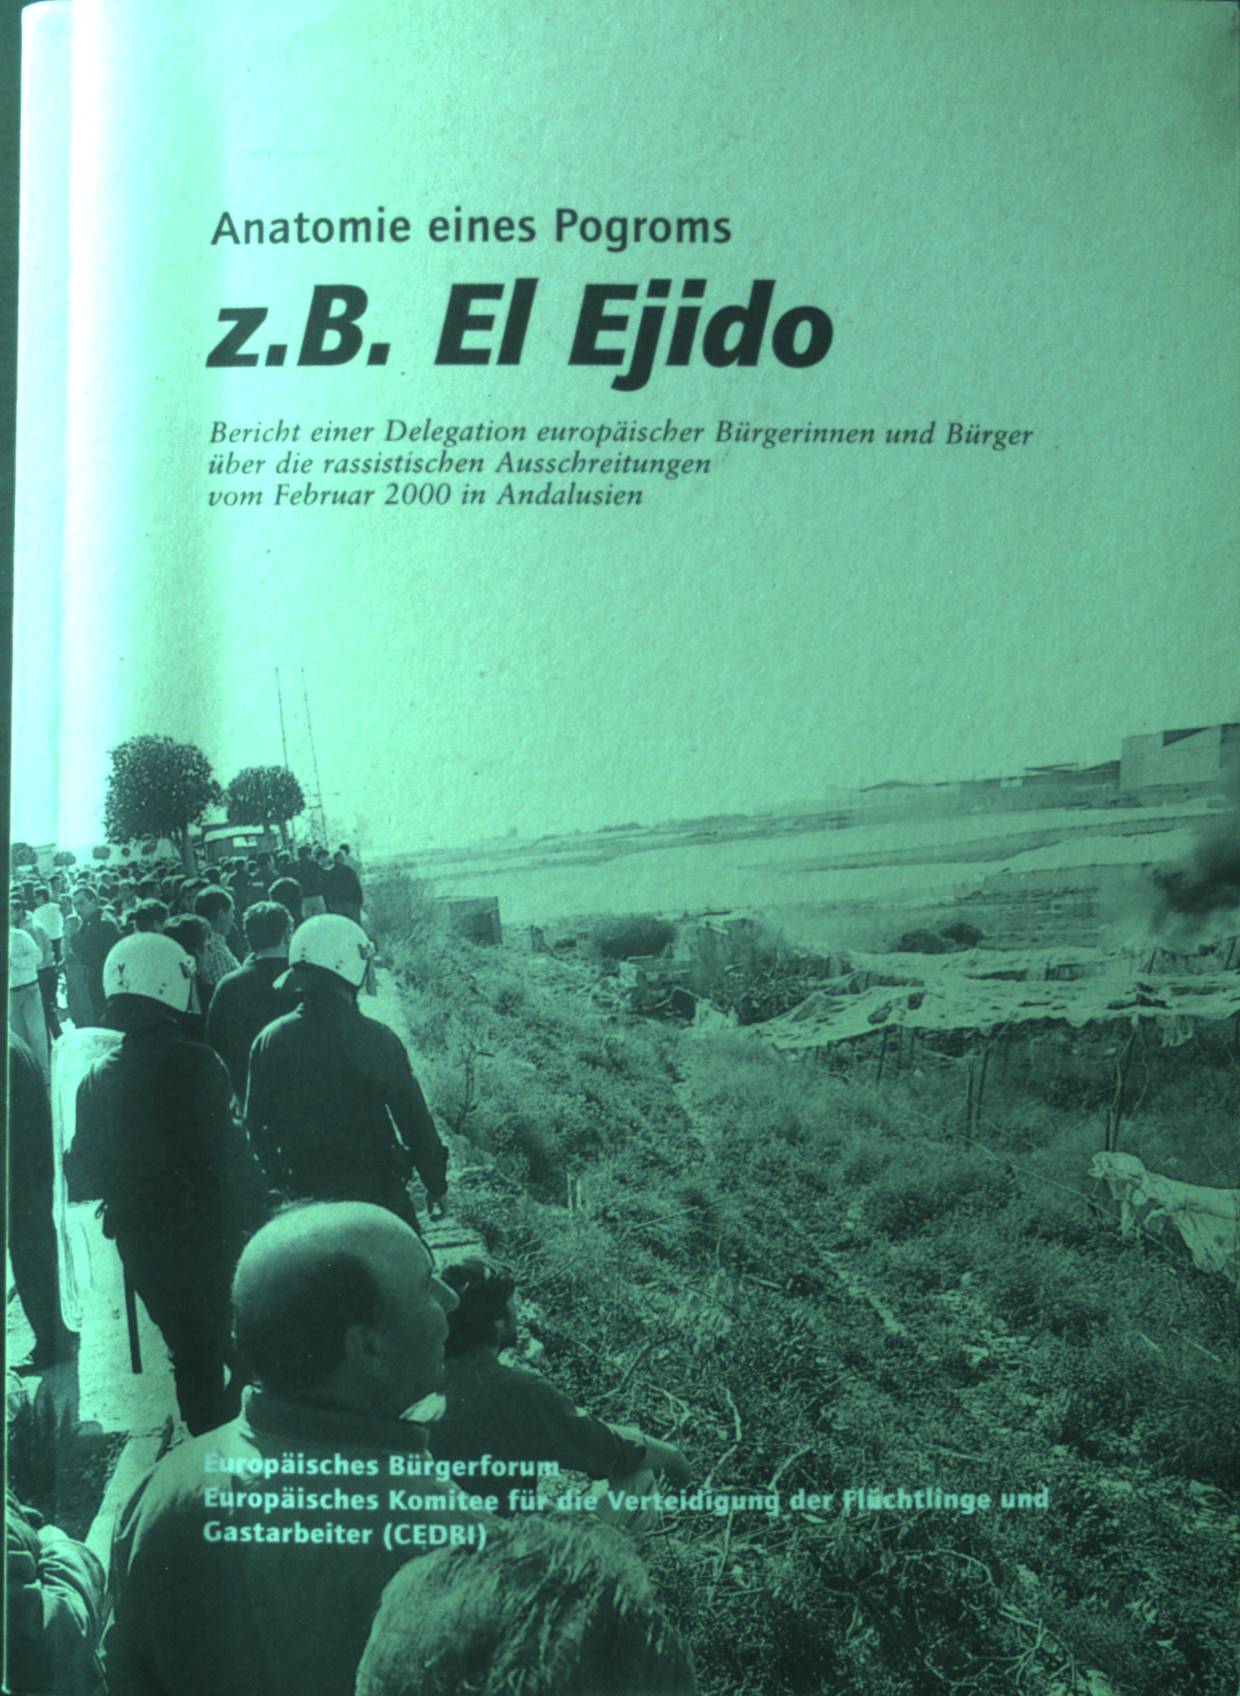 Anatomie eines Pogroms, z.B. El Ejido: Bericht einer Delegation europäischer Bürgerinnen und Bürger über die rassisistischen Ausschreitungen vom Februar 2000 in Andalusien.